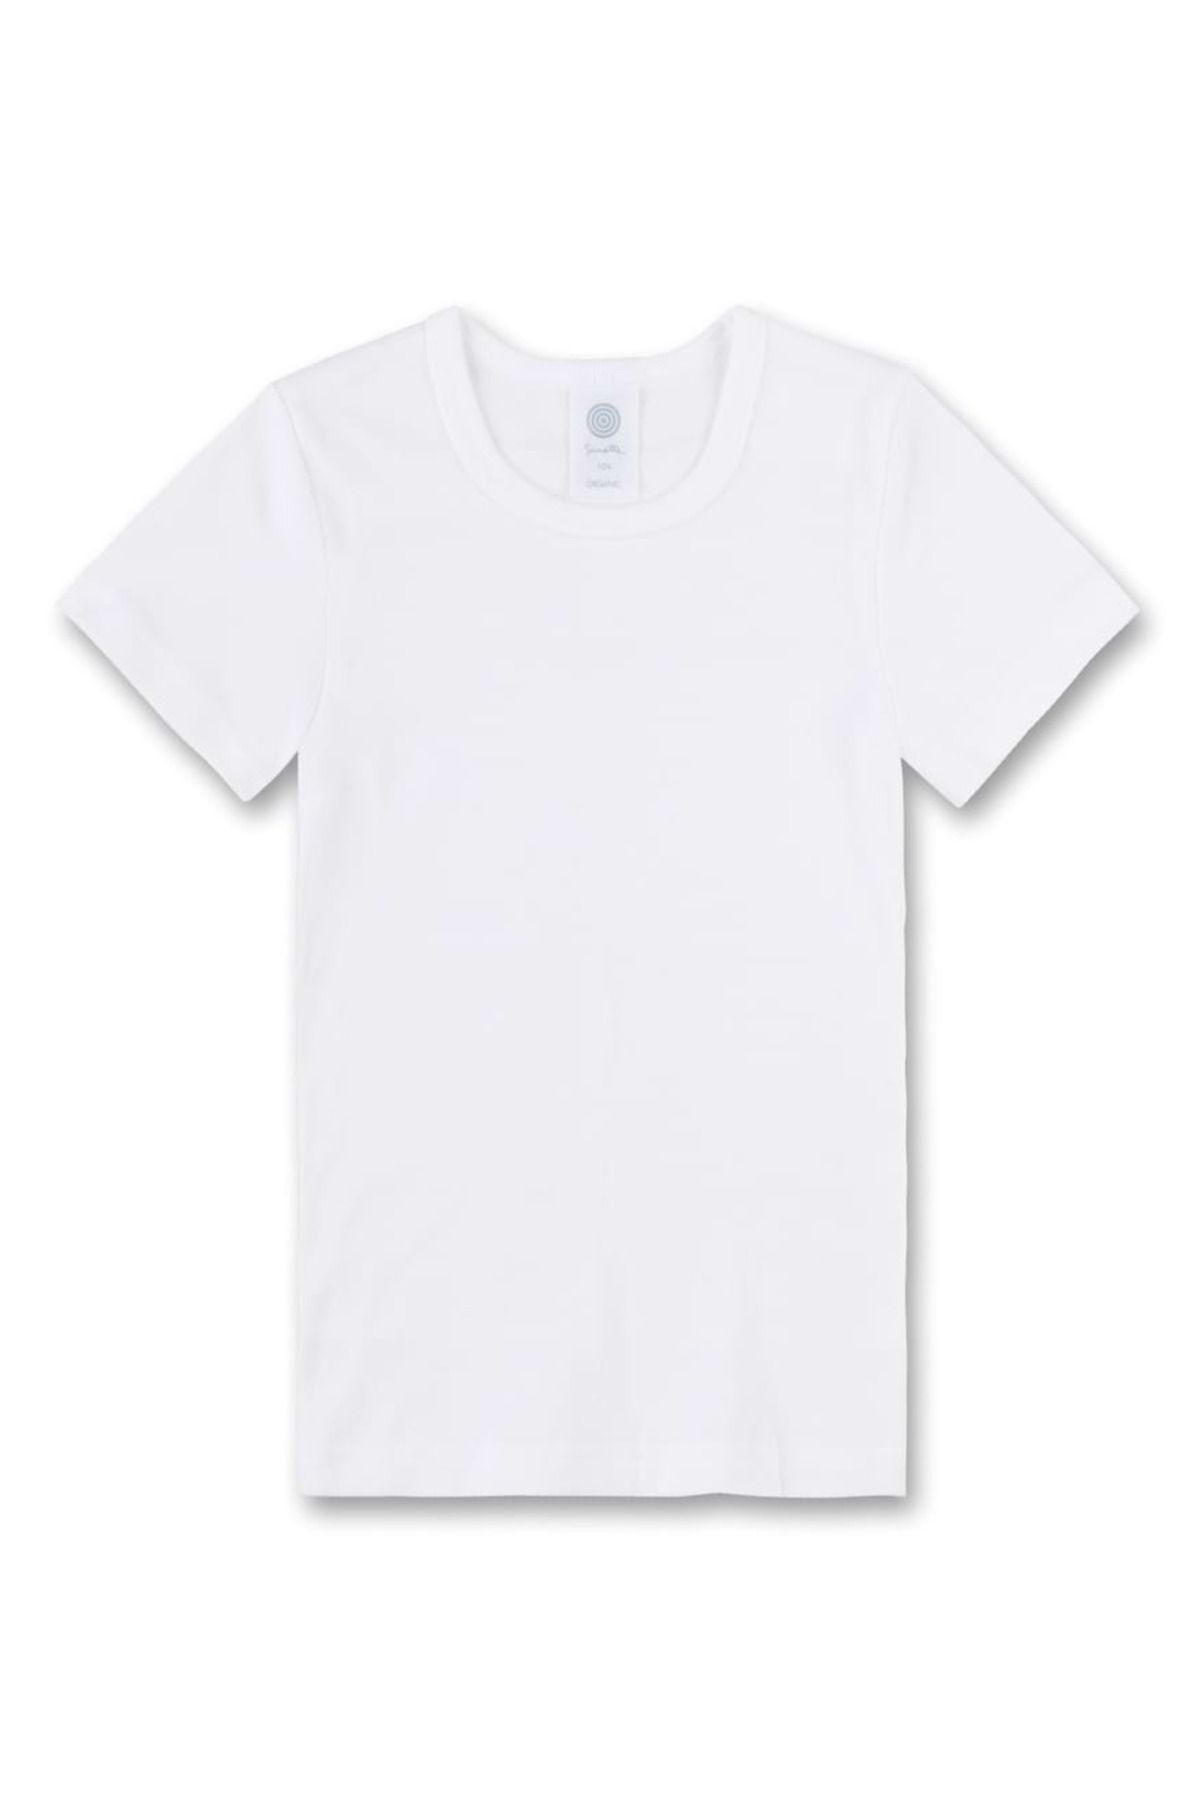 Baumwolle, unisex, Unterhemd einfarbig - Trendyol - Kinder Kurzarm, Sanetta T-Shirt,